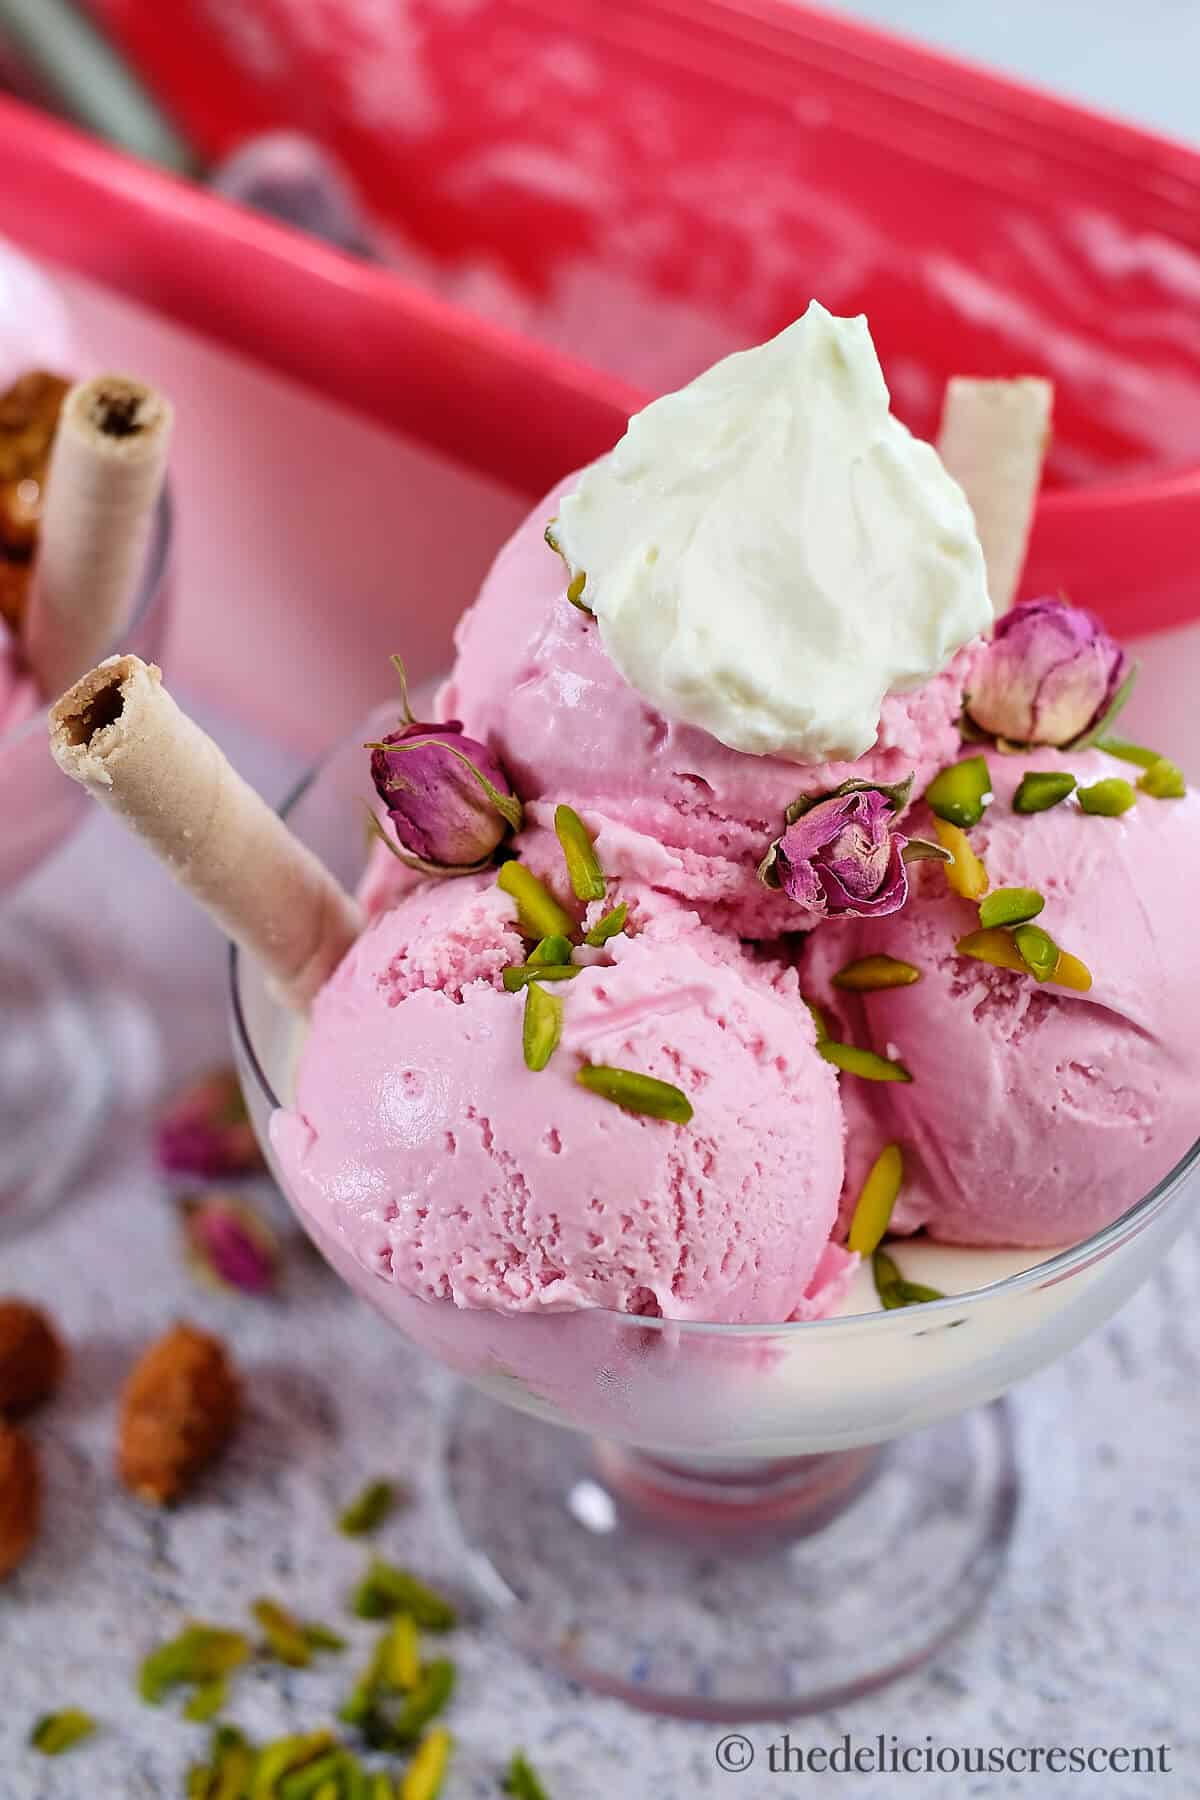  Perfect Ice Cream [Ice Cream Stabilizer] Vegan OU